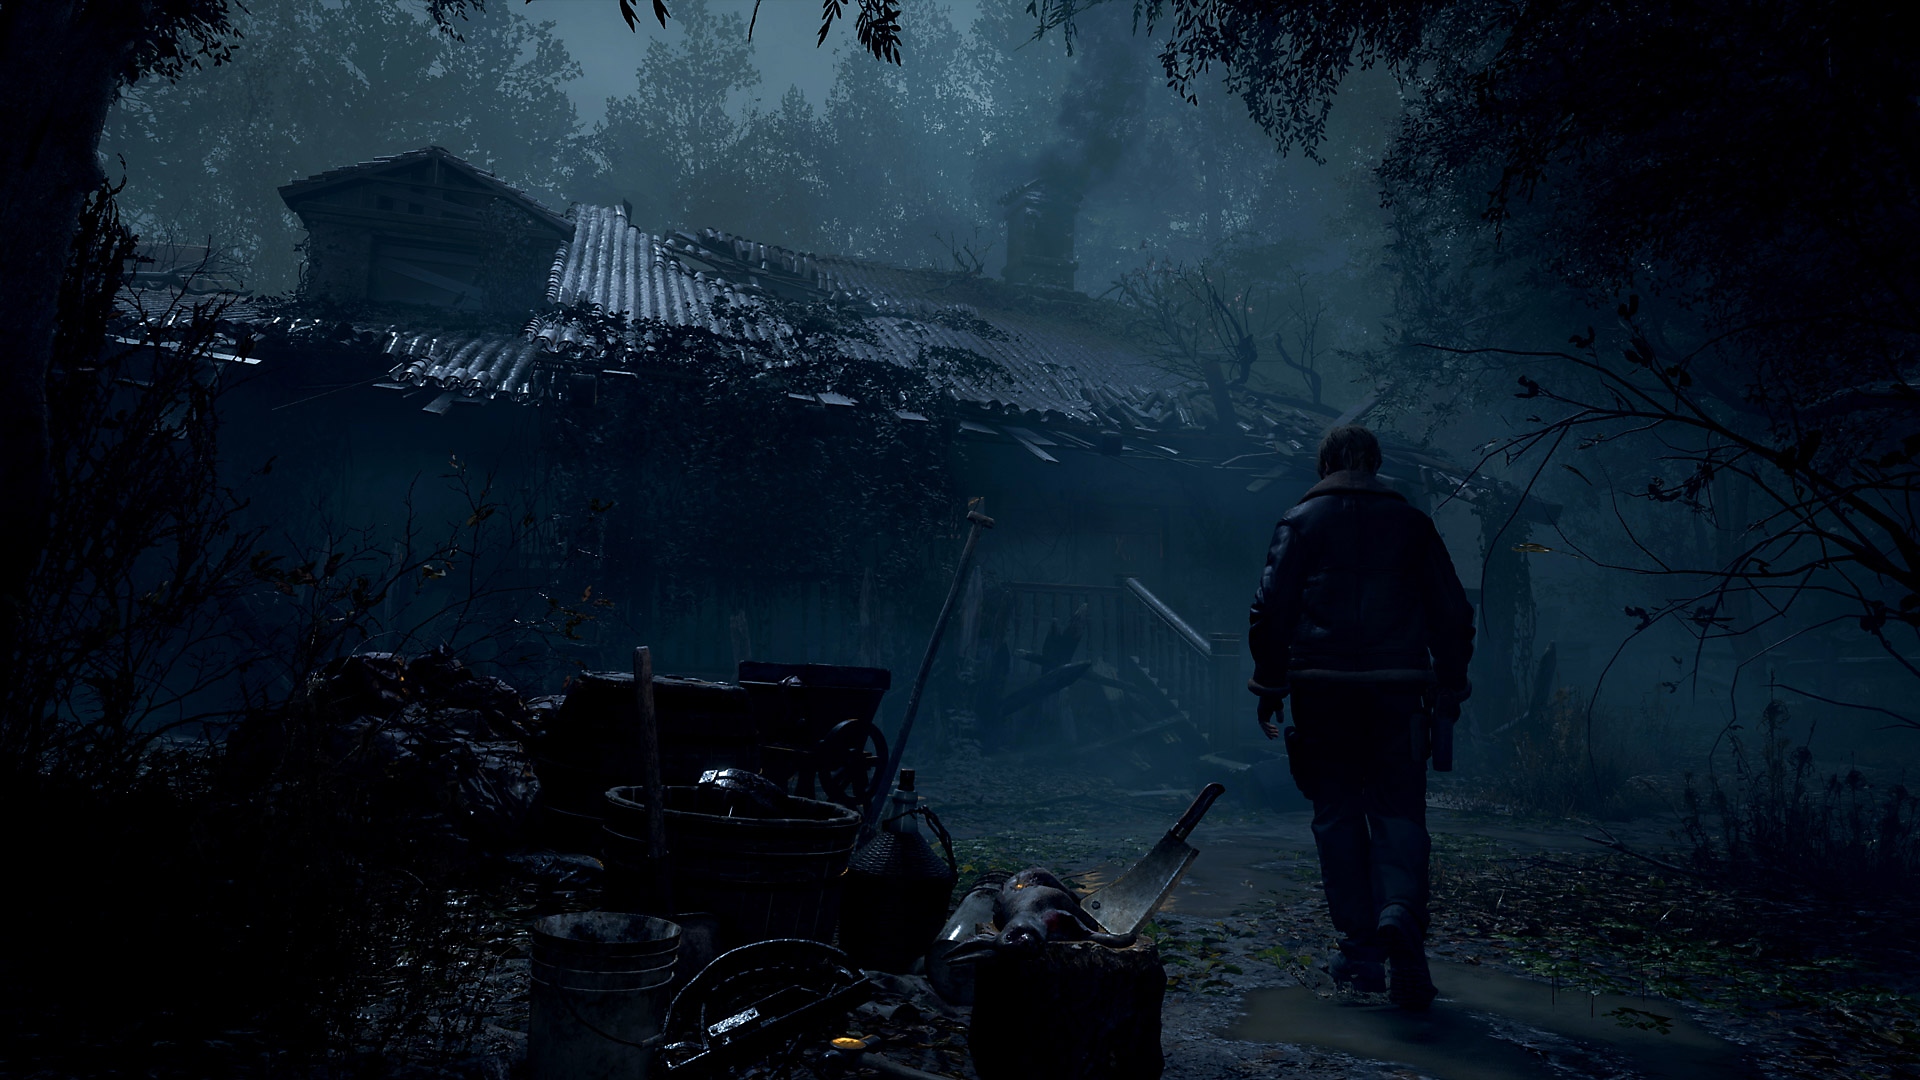 Captura de pantalla de Resident Evil 4 con Leon Kennedy acercándose a una vivienda rural en ruinas.